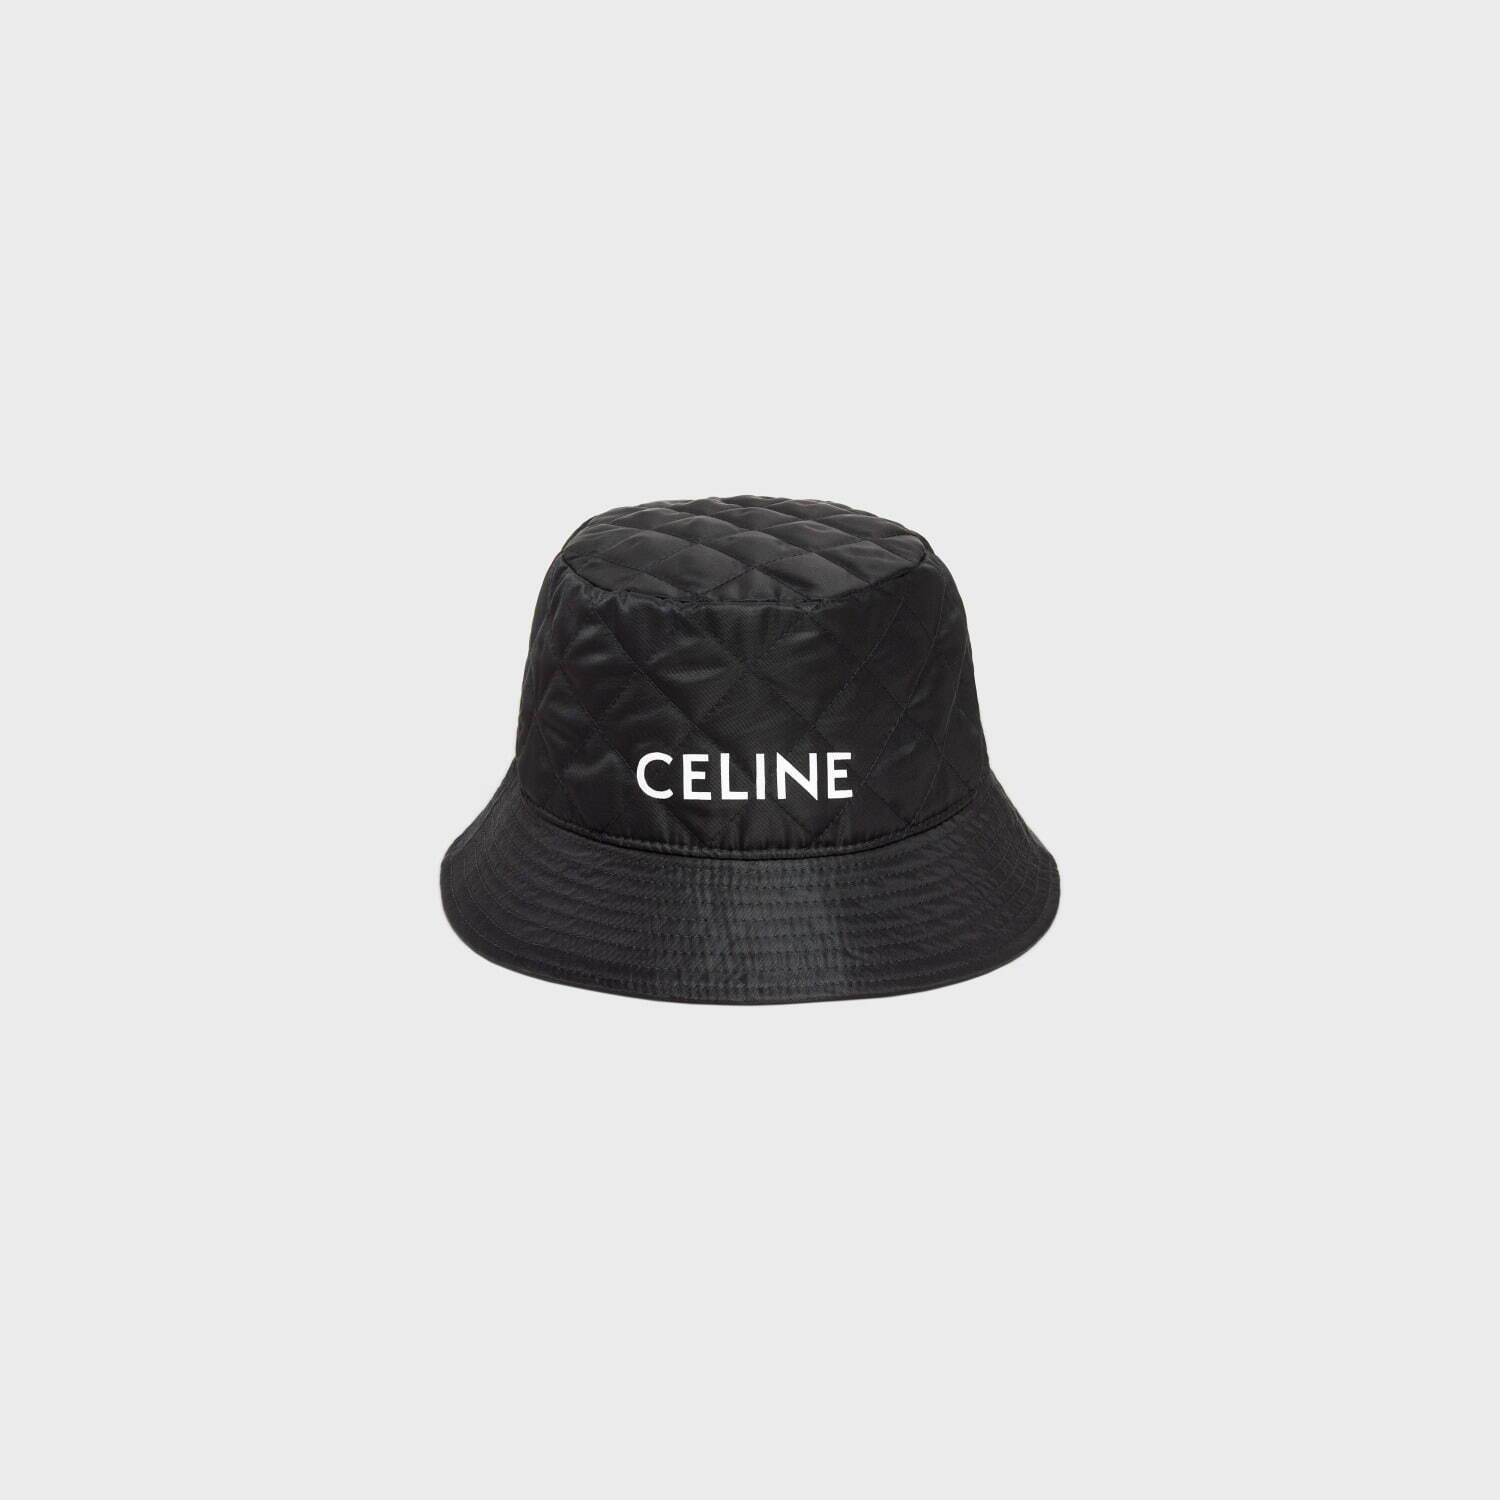 セリーヌ オム“CELINE”ロゴを配した新作ウェア＆スニーカー、Tシャツやフーディーなど コピー